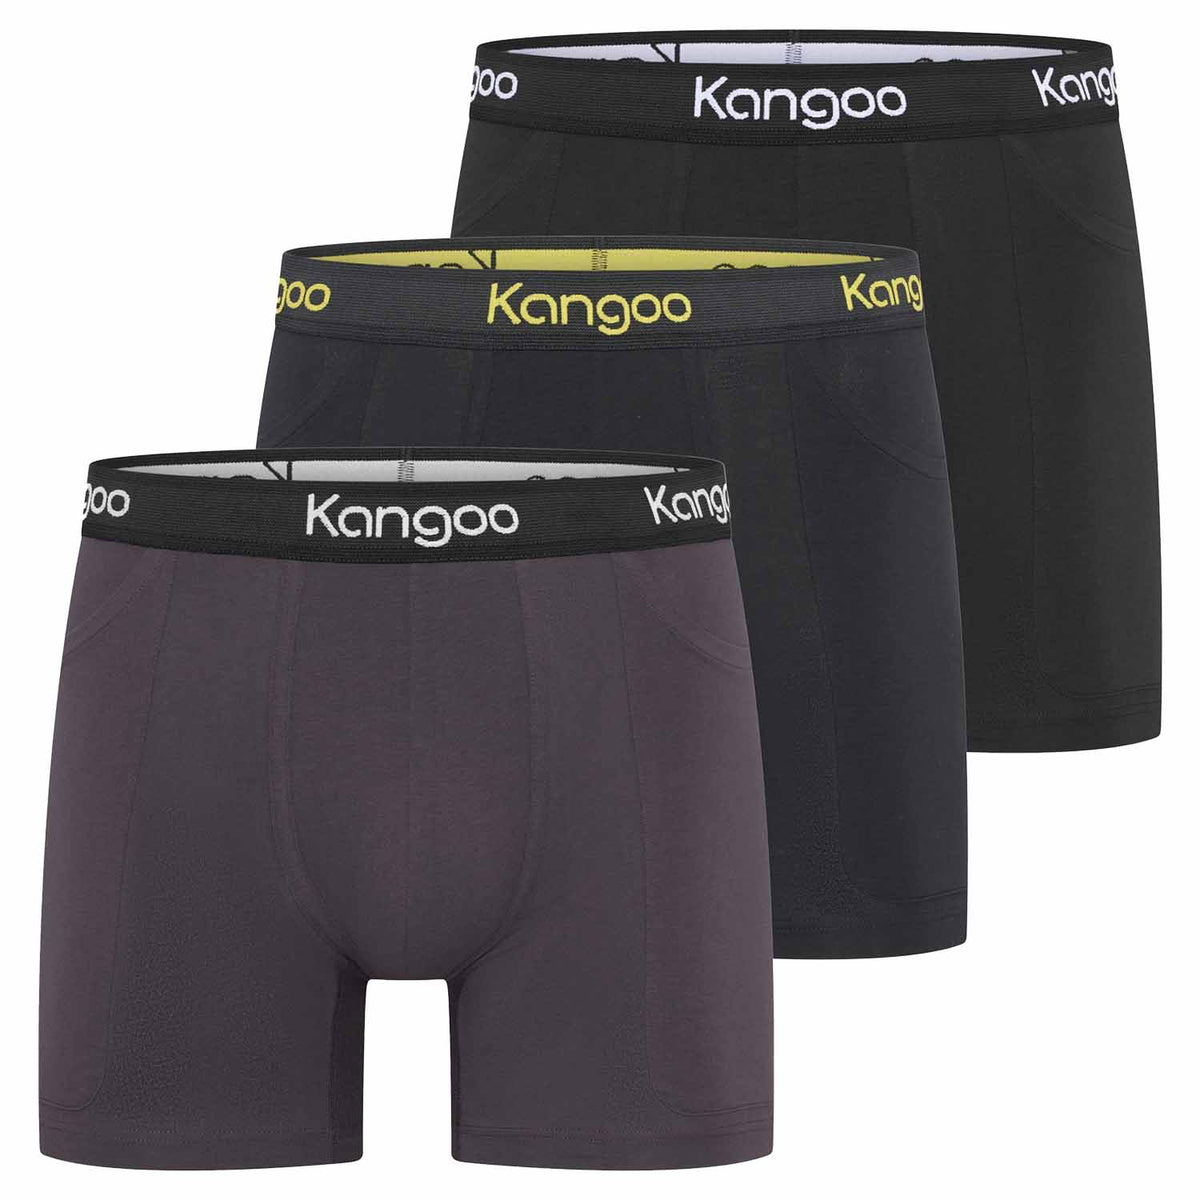 Kangoo | Dark | 3-pack